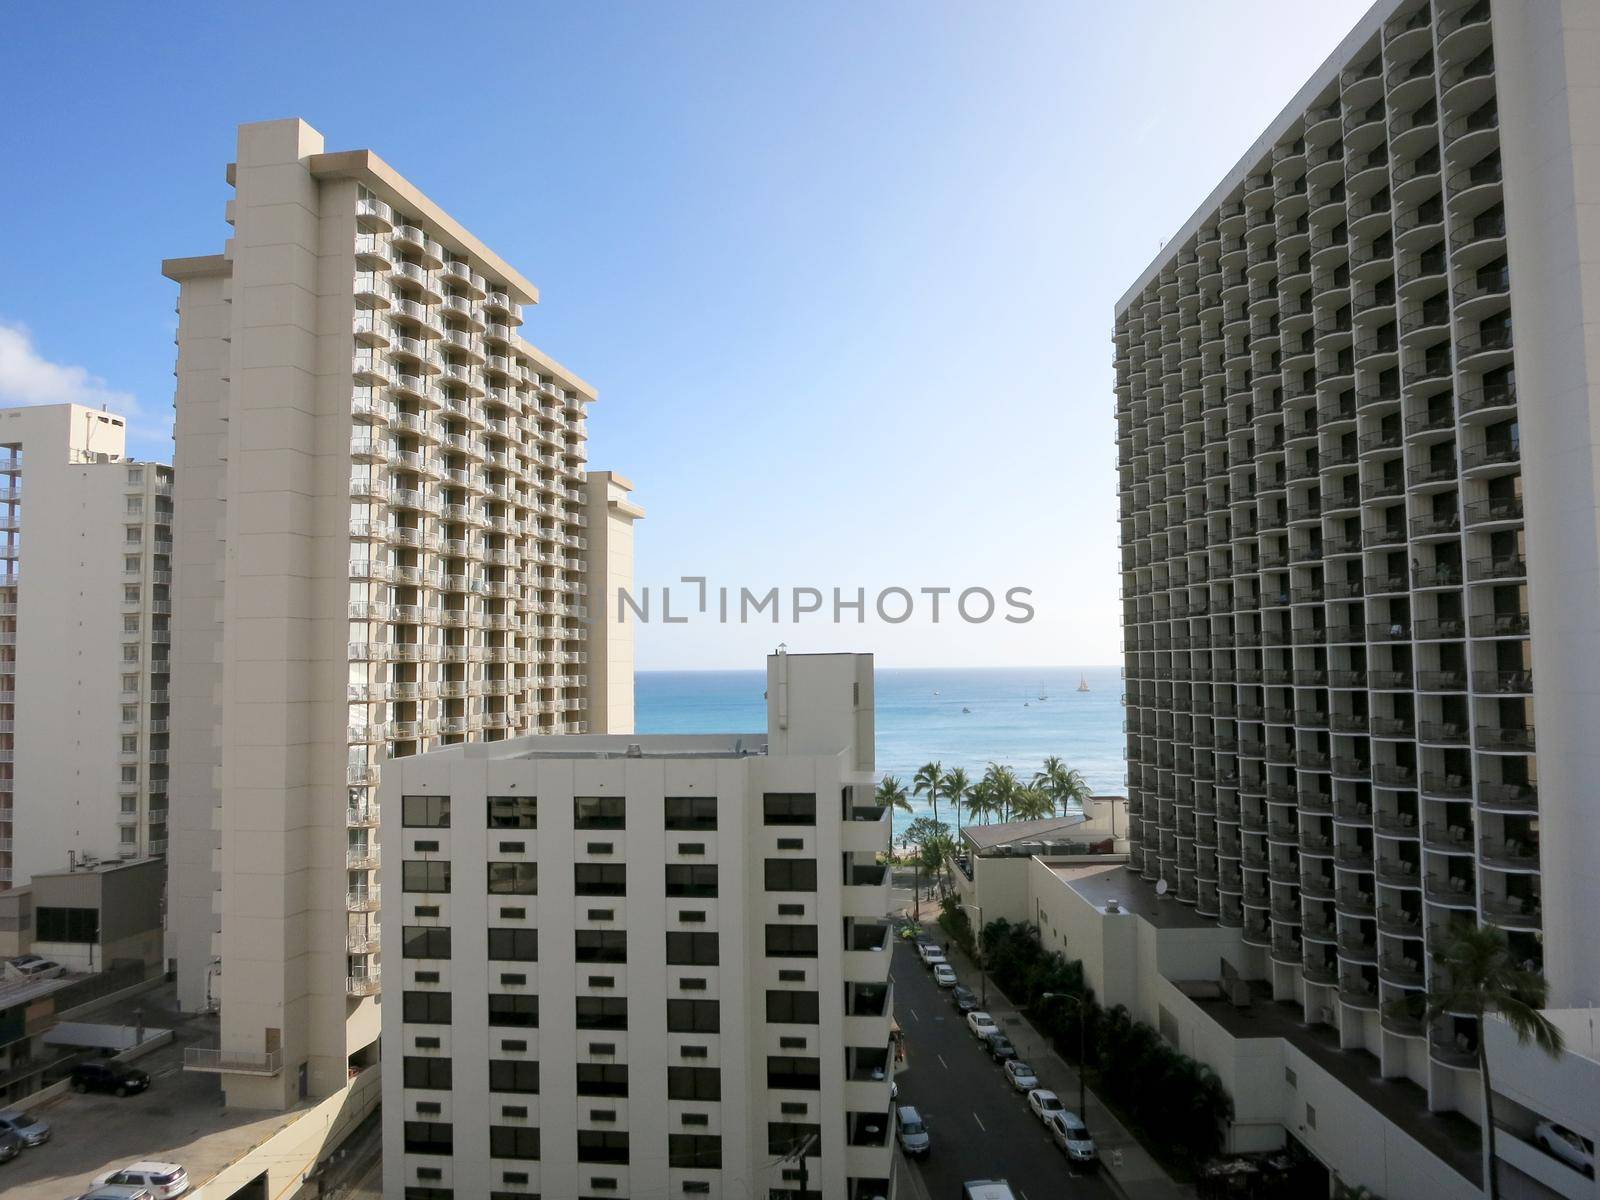 Waikiki - April 24, 2016: Waikiki Hotels, street and Ocean during day.                     